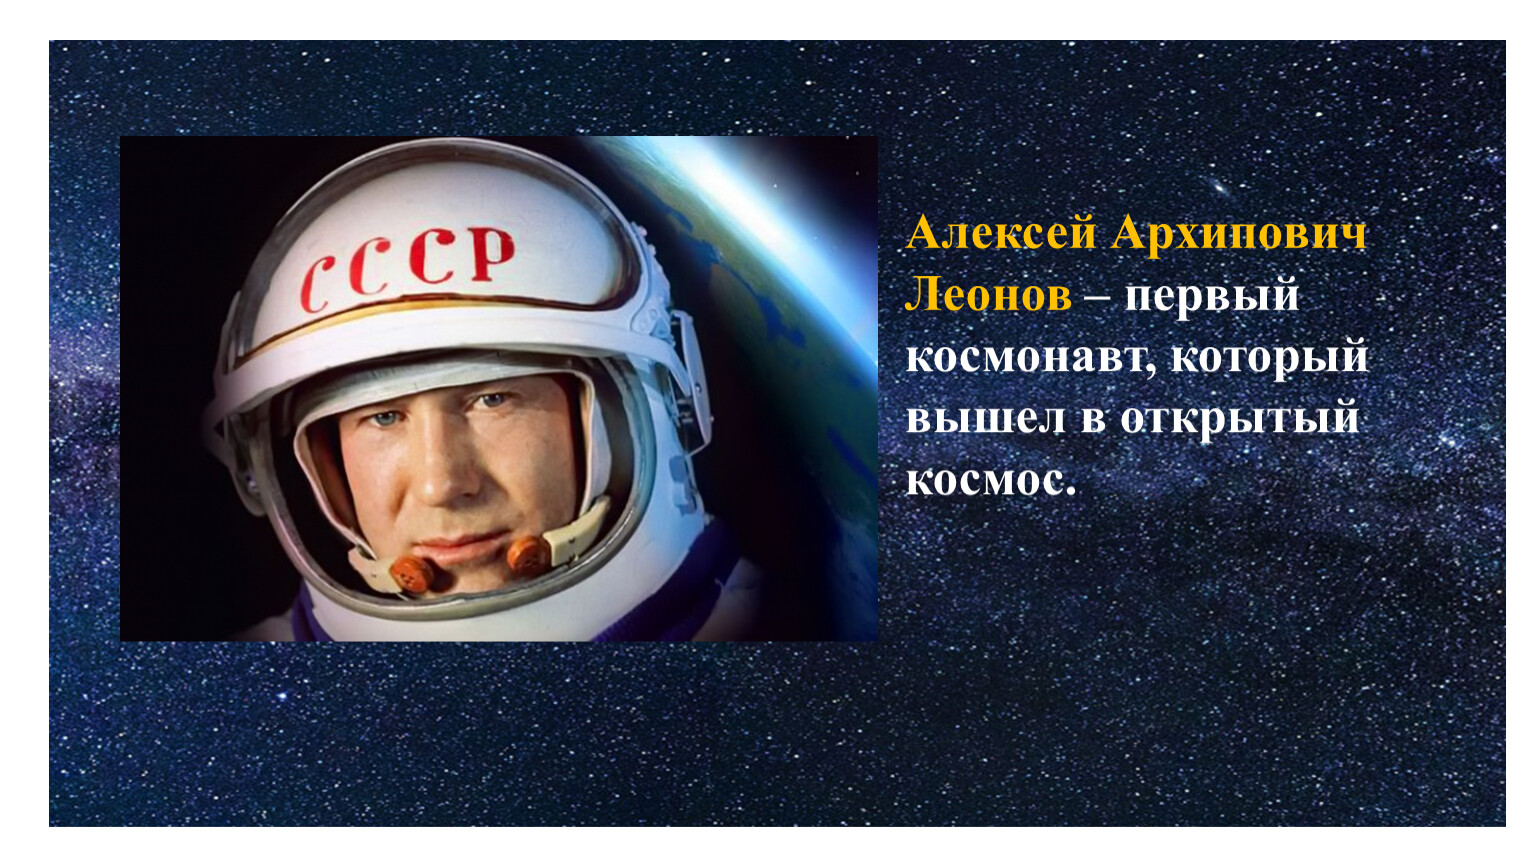 Второй космонавт вышедший в открытый космос. Первый выход в космос Алексея Архиповича. Первый вышел в открытый космос.